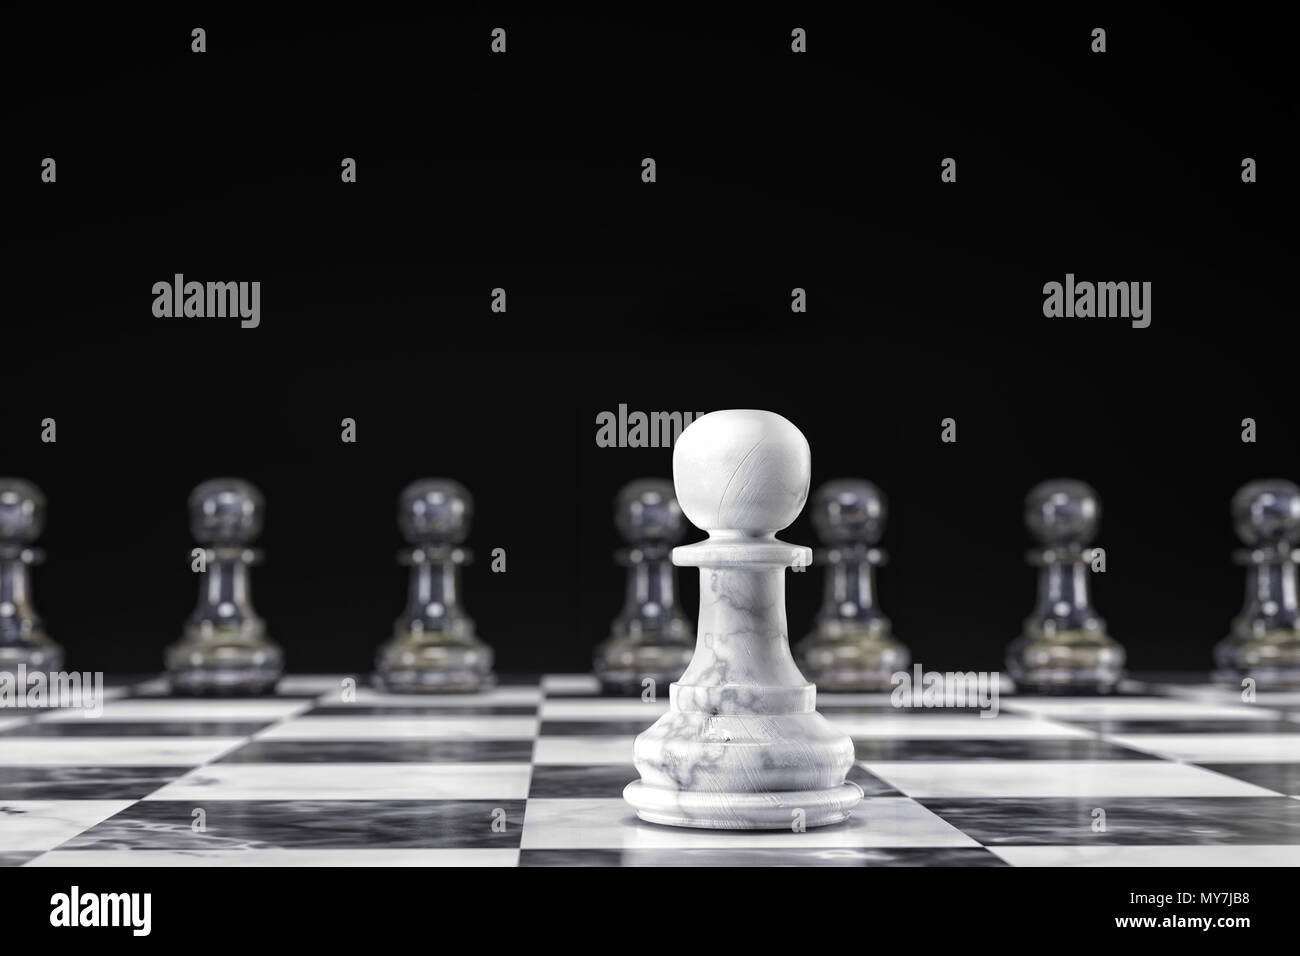 3D-Render von weißen und schwarzen Marmor schach Schachfiguren - ein weißer Bauer statt acht schwarze Bauer auf Schachbrett auf schwarzem Hintergrund Stockfoto